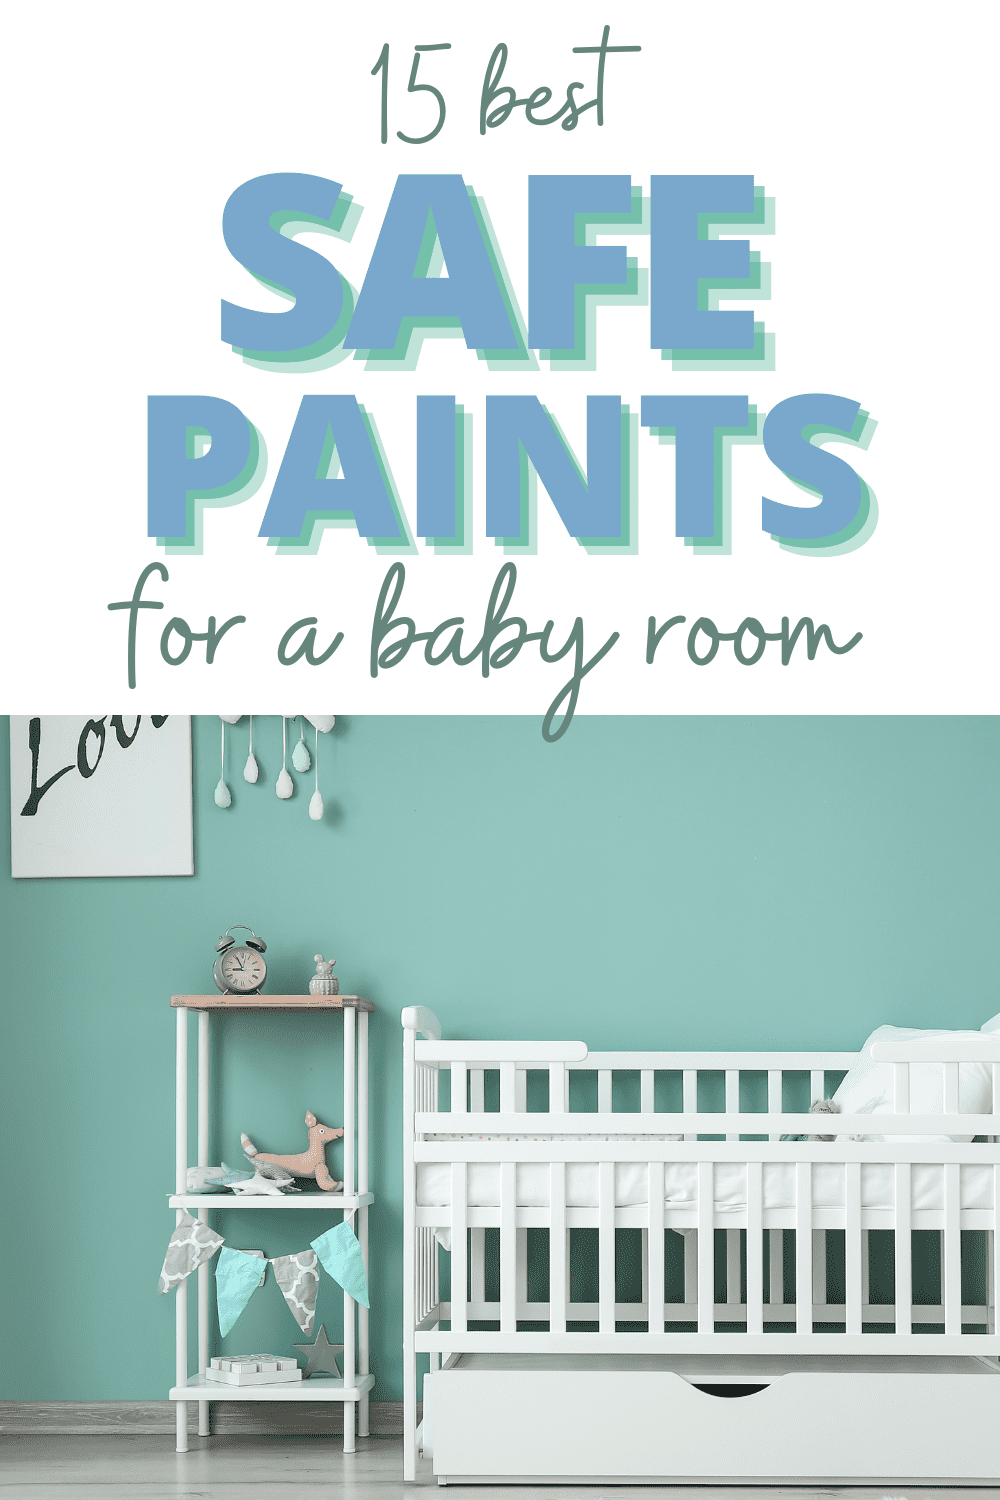 zero voc paint safe for babies & best non toxic paint for nursery FEATURE IMAGE